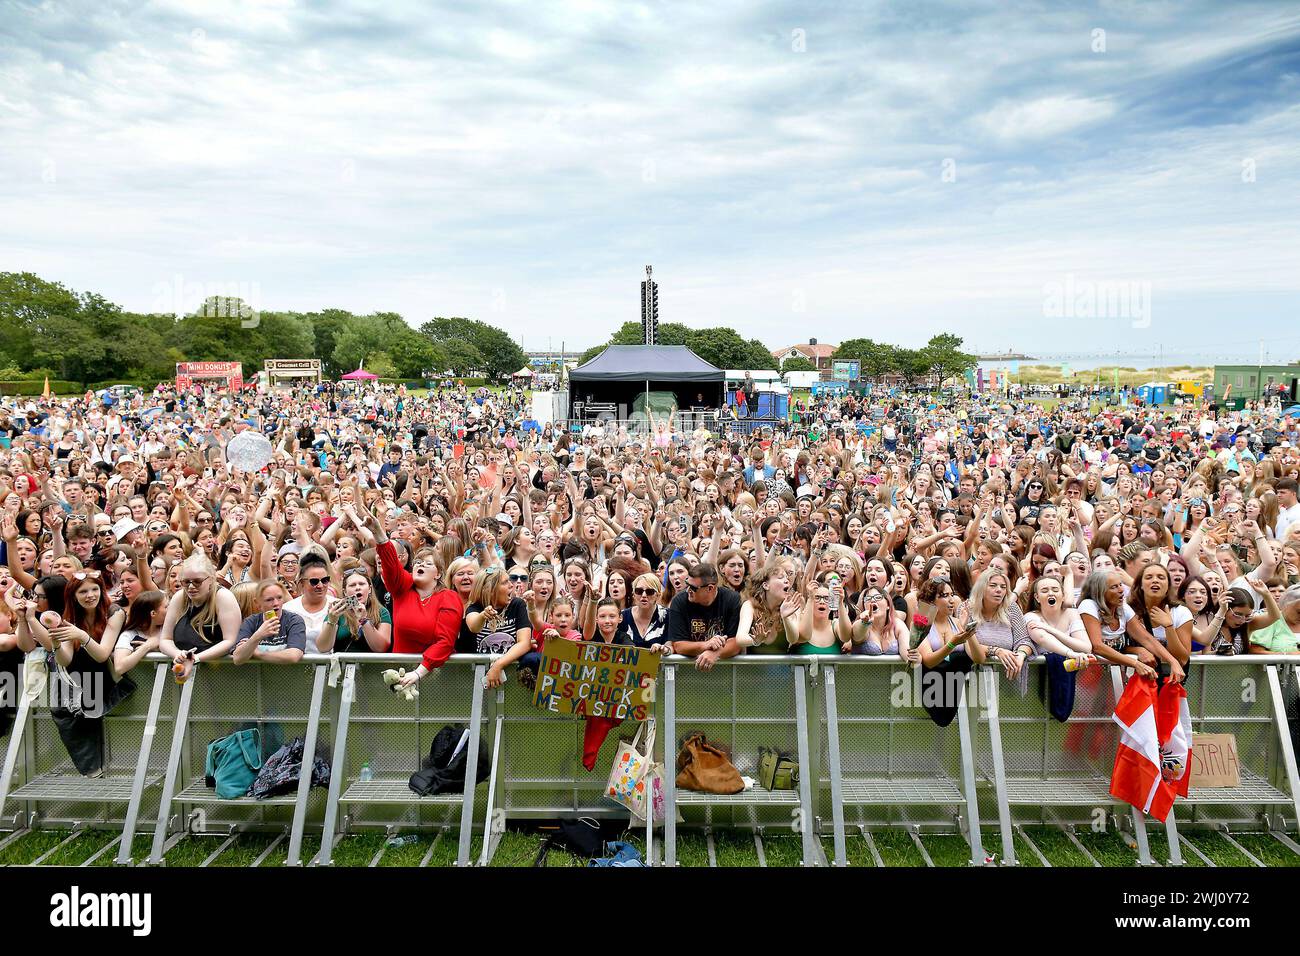 Ecstatic Crowd, South Tyneside Music Festival 10 juillet 2023, Bents Park, South Shields, Nord-est de l'Angleterre, Royaume-Uni Banque D'Images